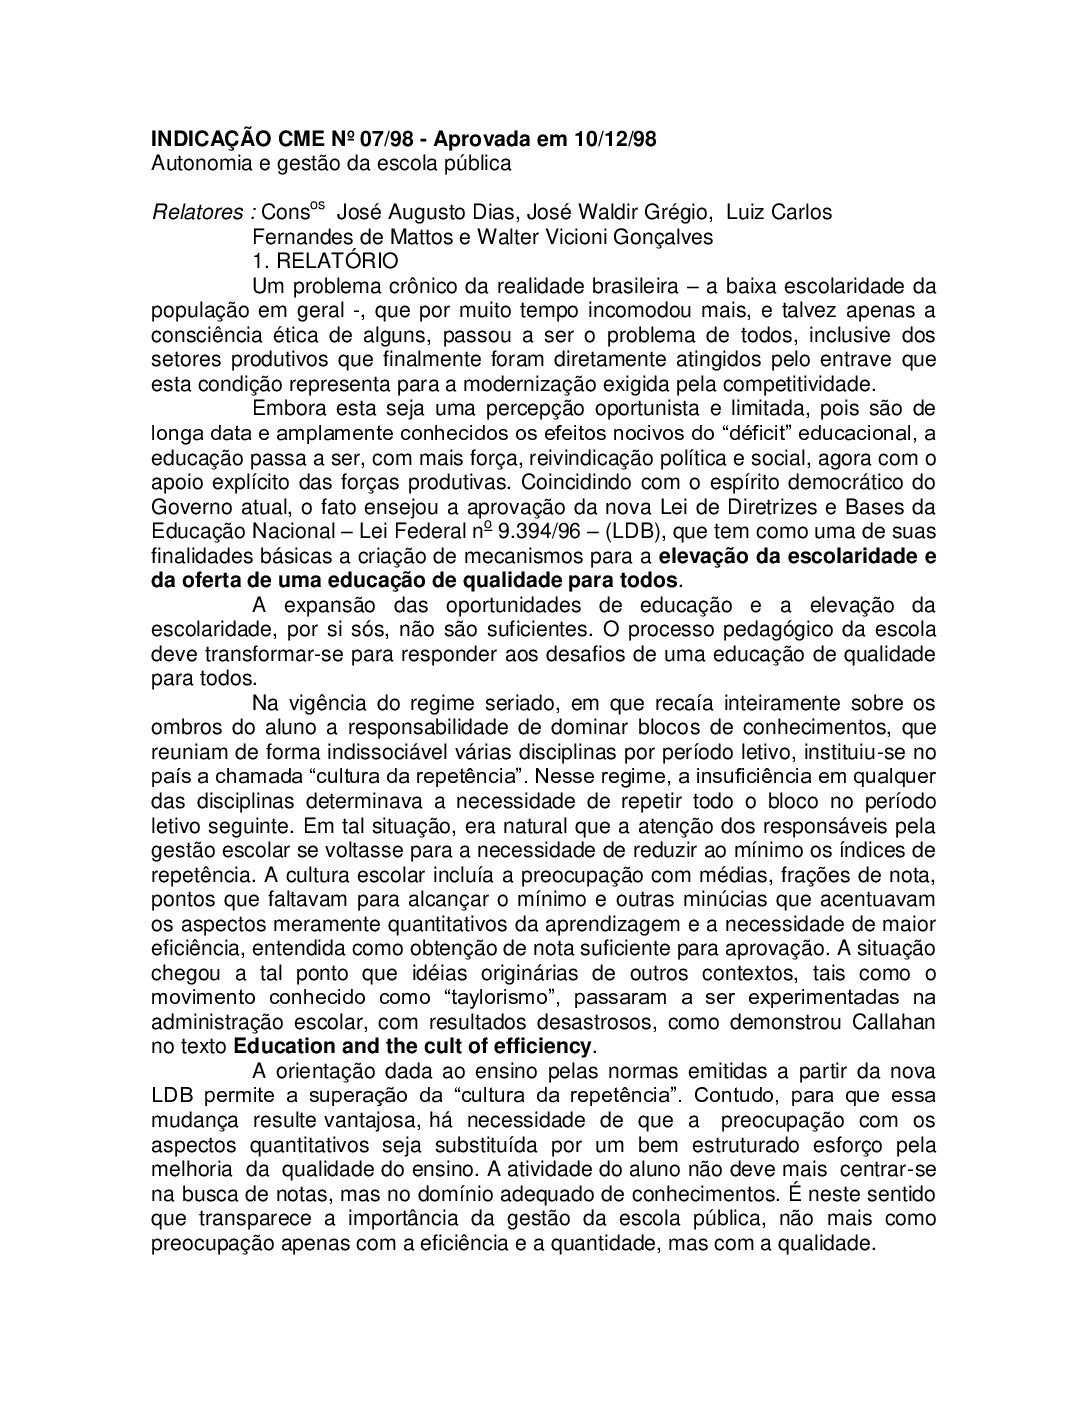 Indicação CME nº 07/1998 - Autonomia e gestão da escola pública